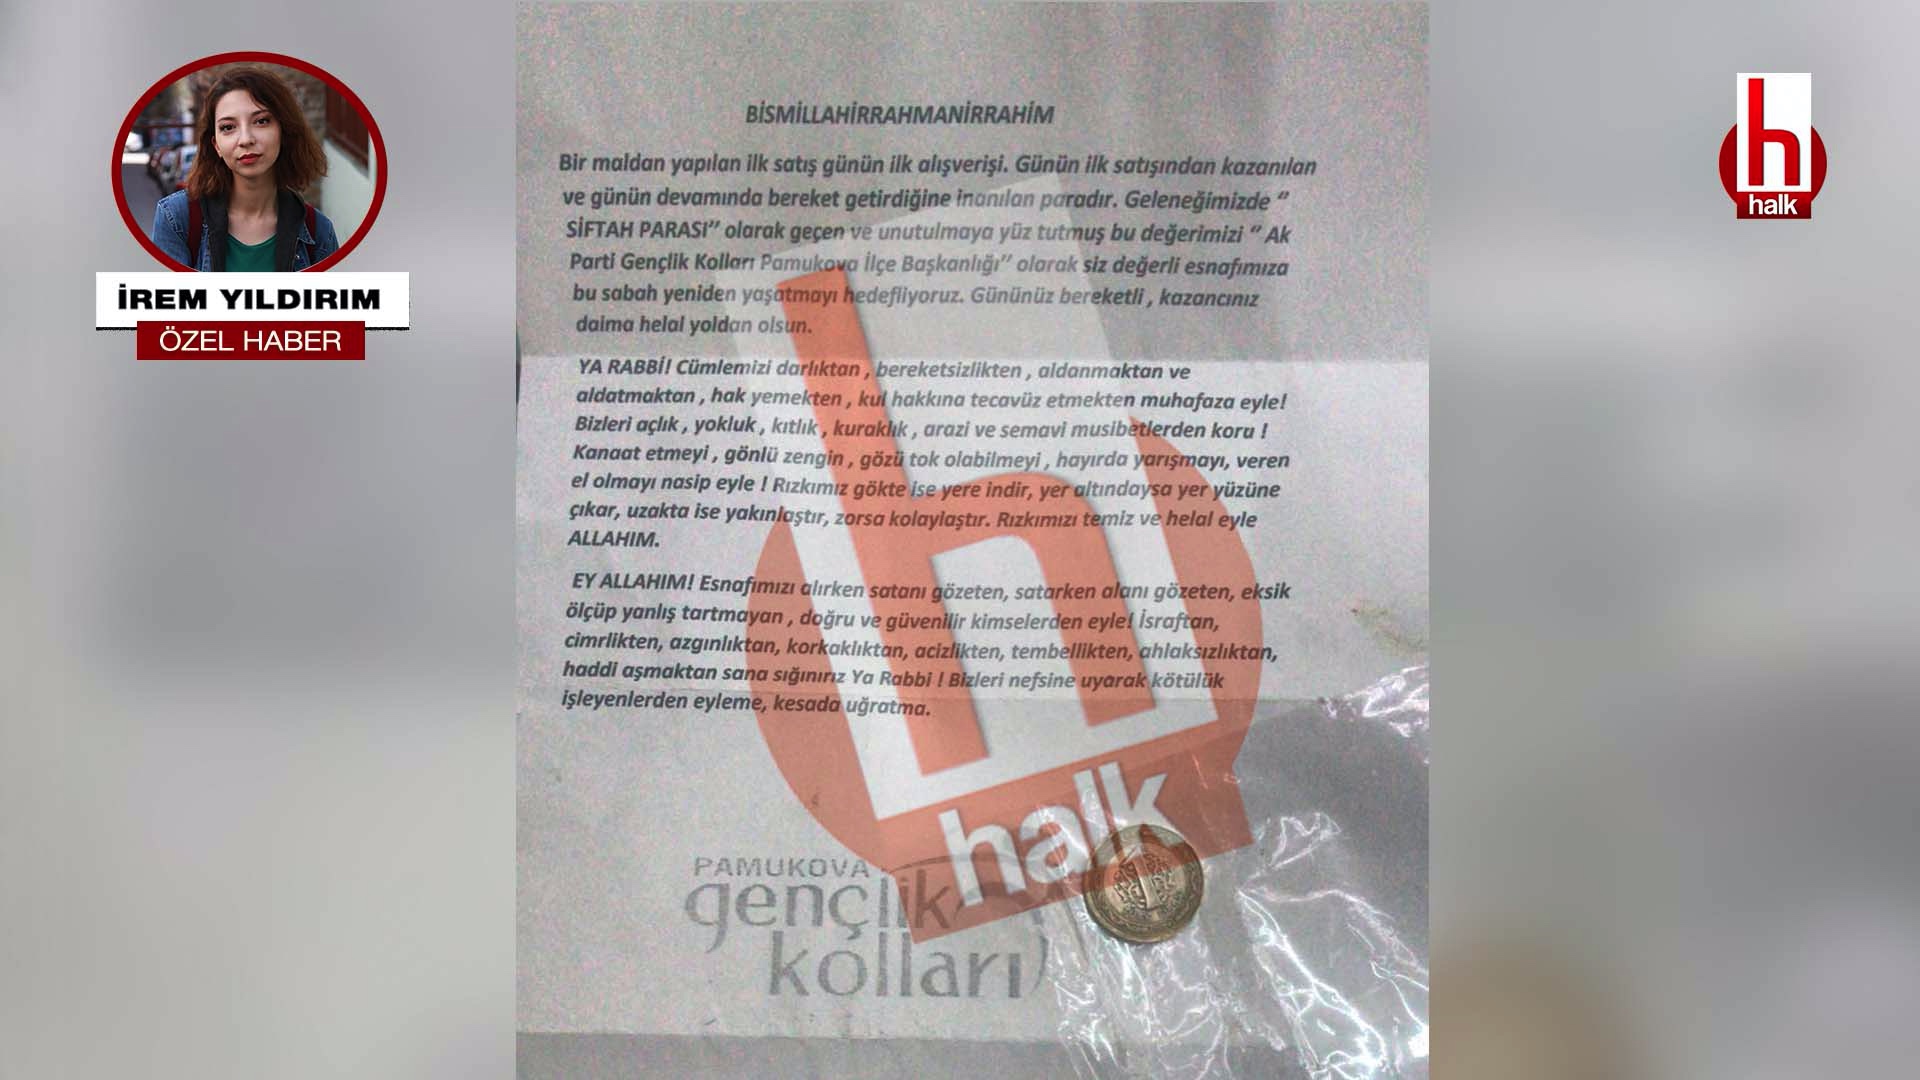 AKP esnafa siftah parası dağıttı: “Bir buçuk lira verselerdi en azından simit alırdık”